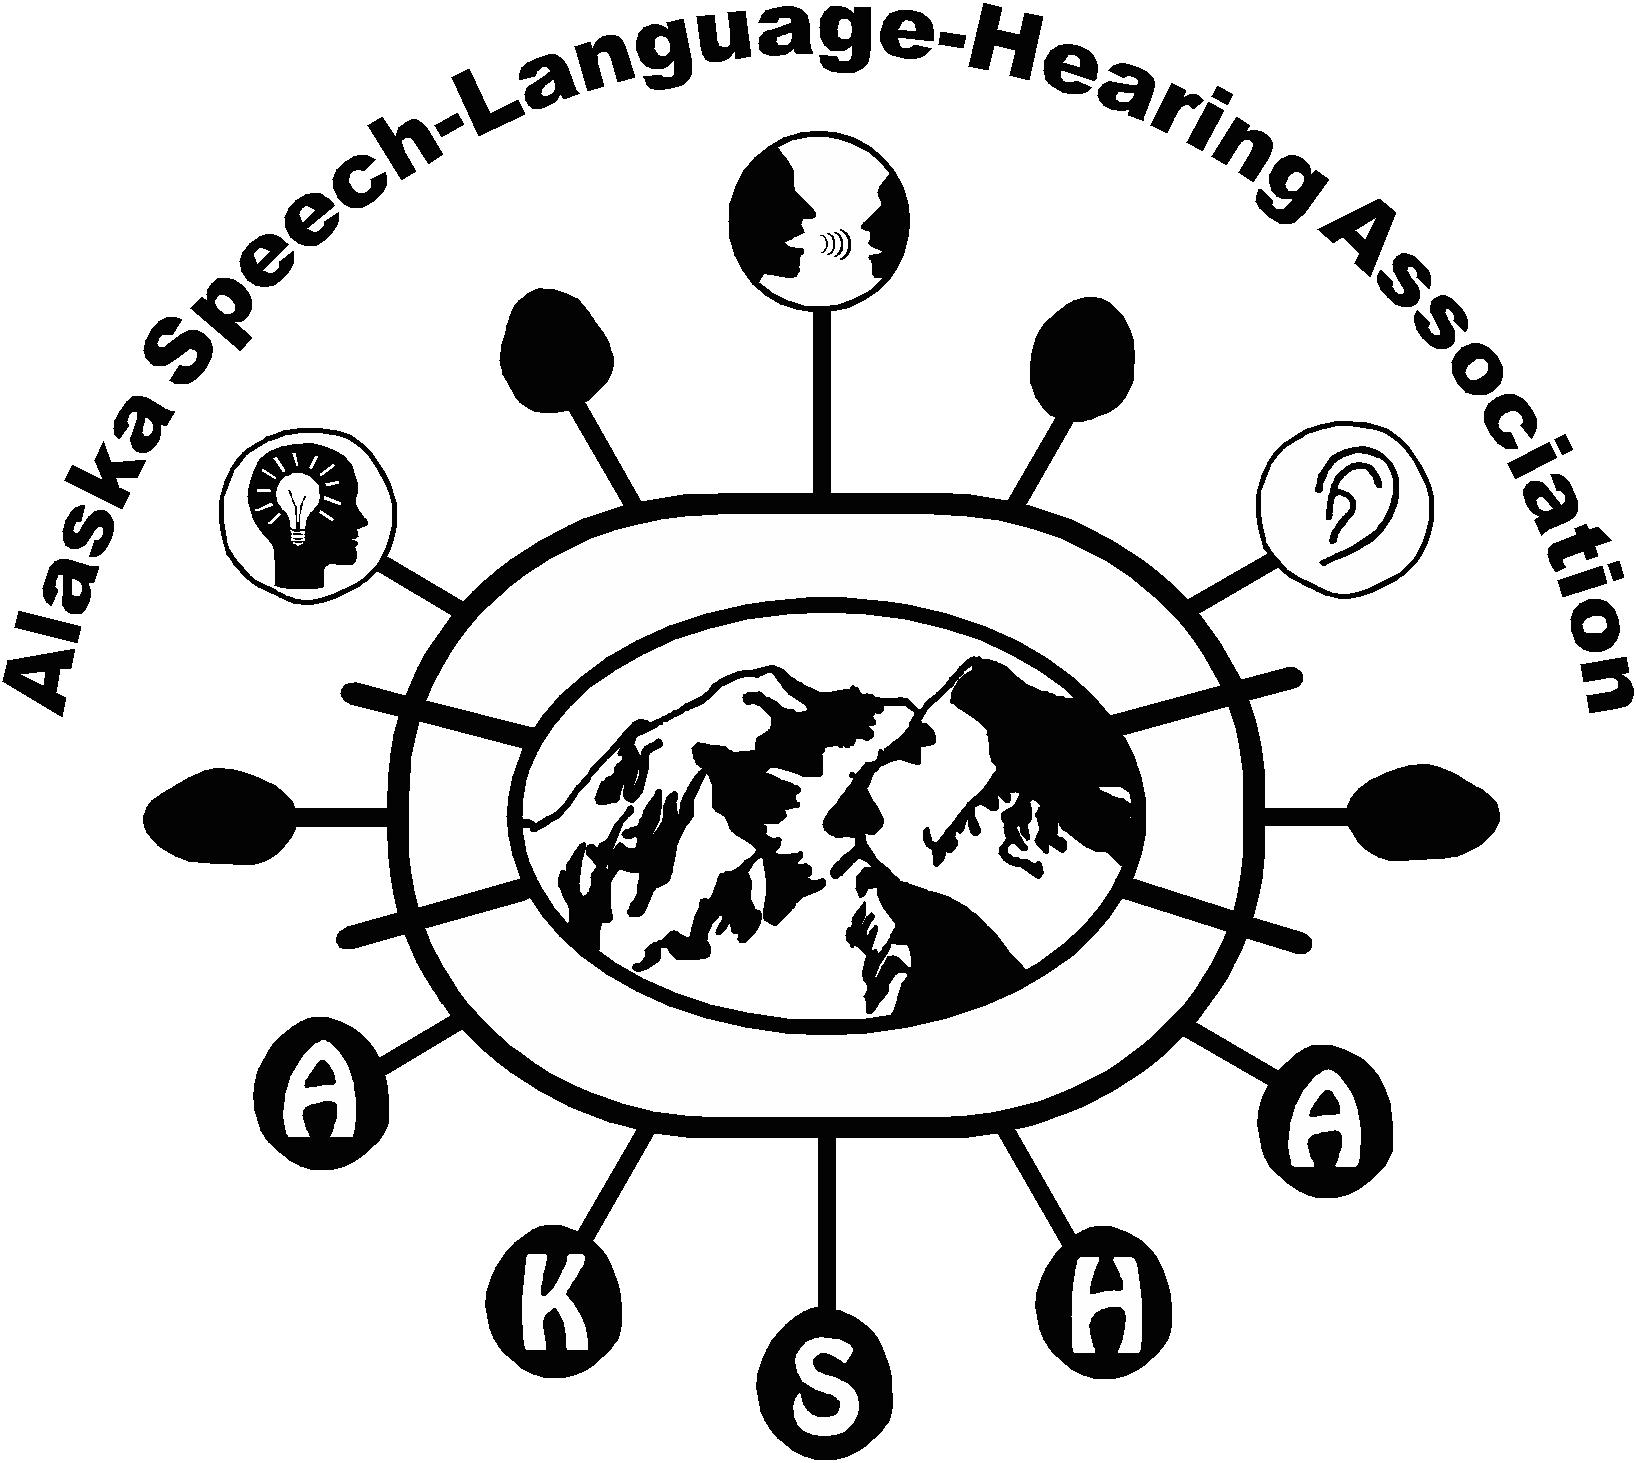 AKSHAupdate - Alaska Speech and Hearing Association.jpg